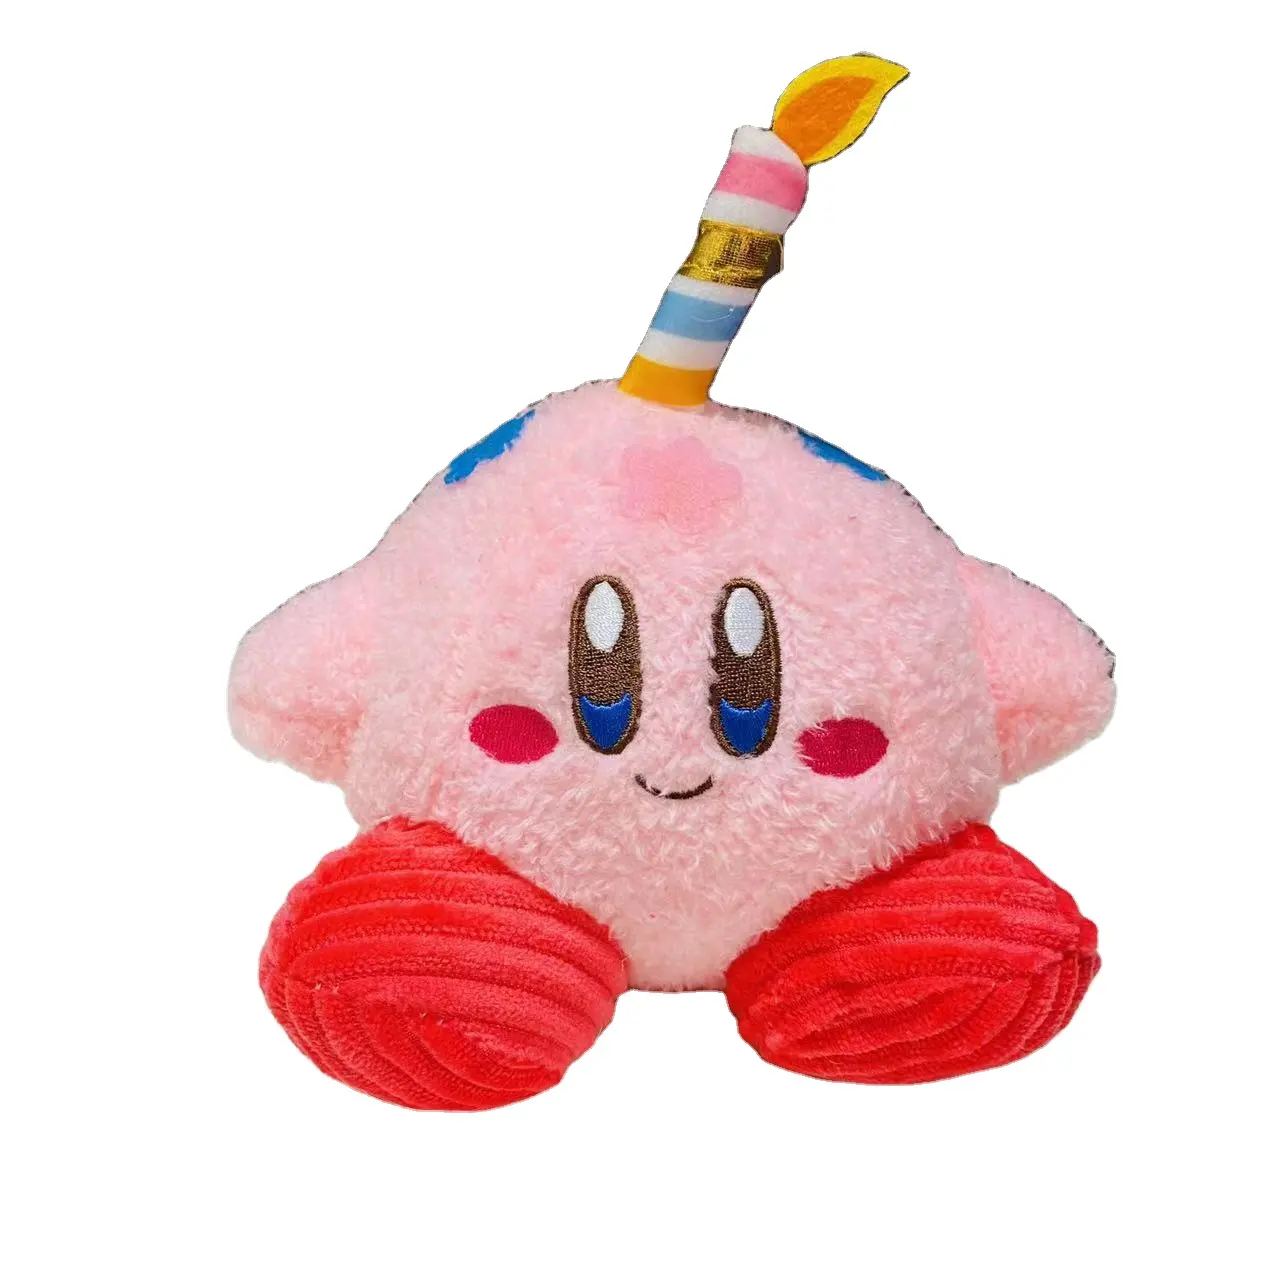 Personalizada estrella Kirby muñeca encantadora dibujos animados vela pastel juguetes de peluche regalo para niña